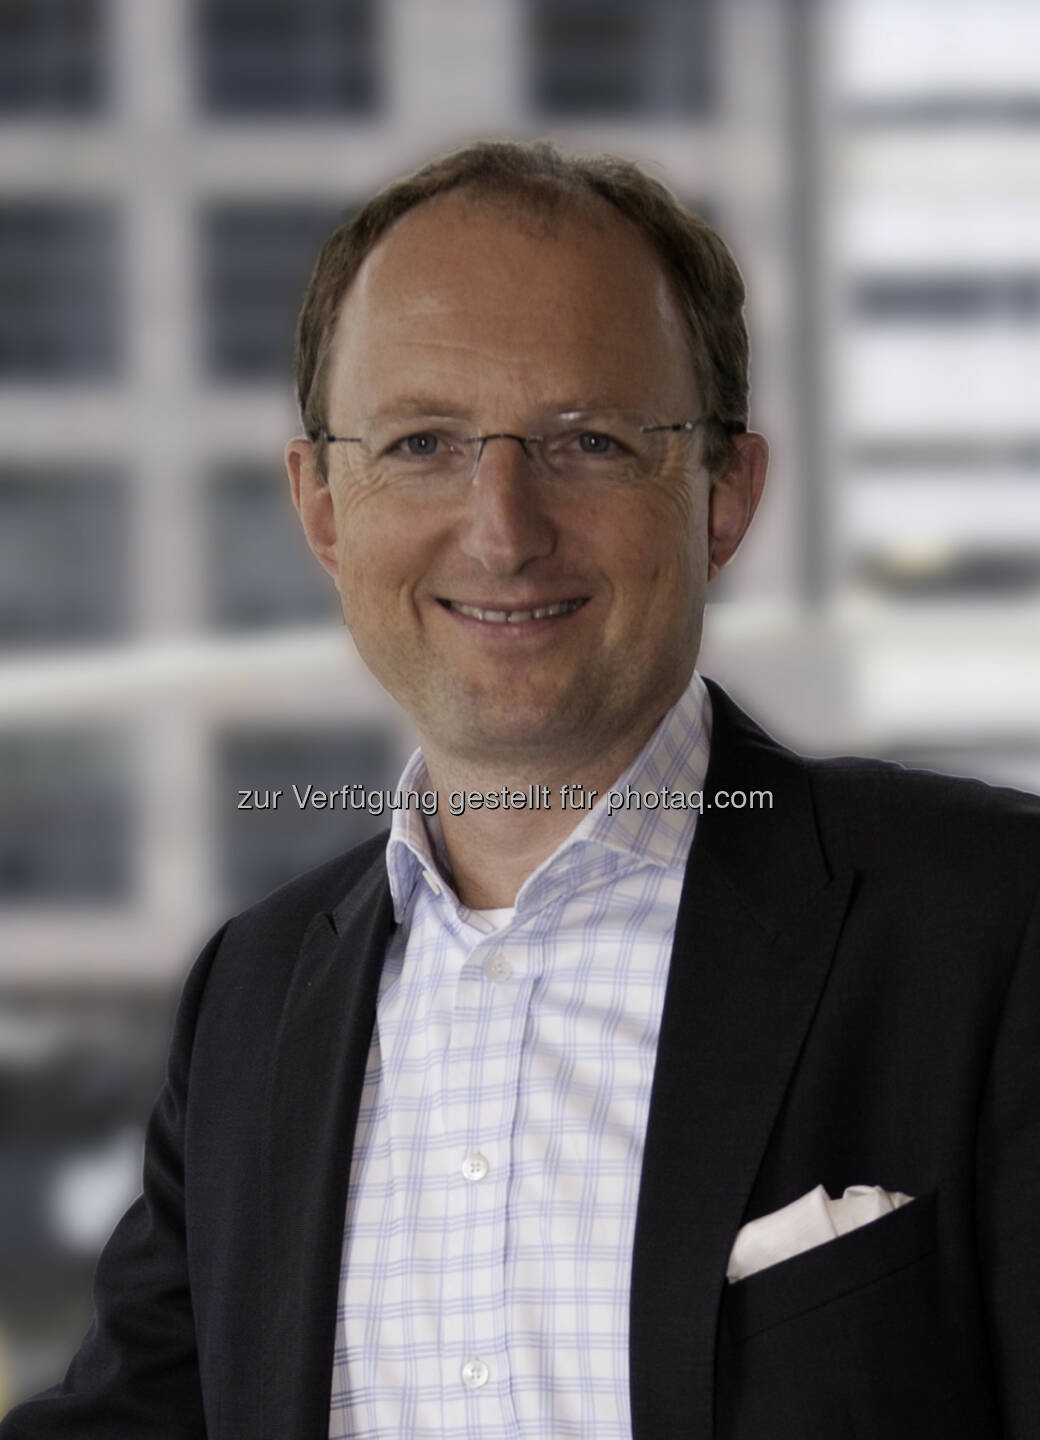 Gerald Kühr übernimmt als neuer Chief Customer Officer die Führung der weltweiten Konzern-Vertriebsorganisation : Fotocredit: Unilever Austria GmbH/Ron van Mark